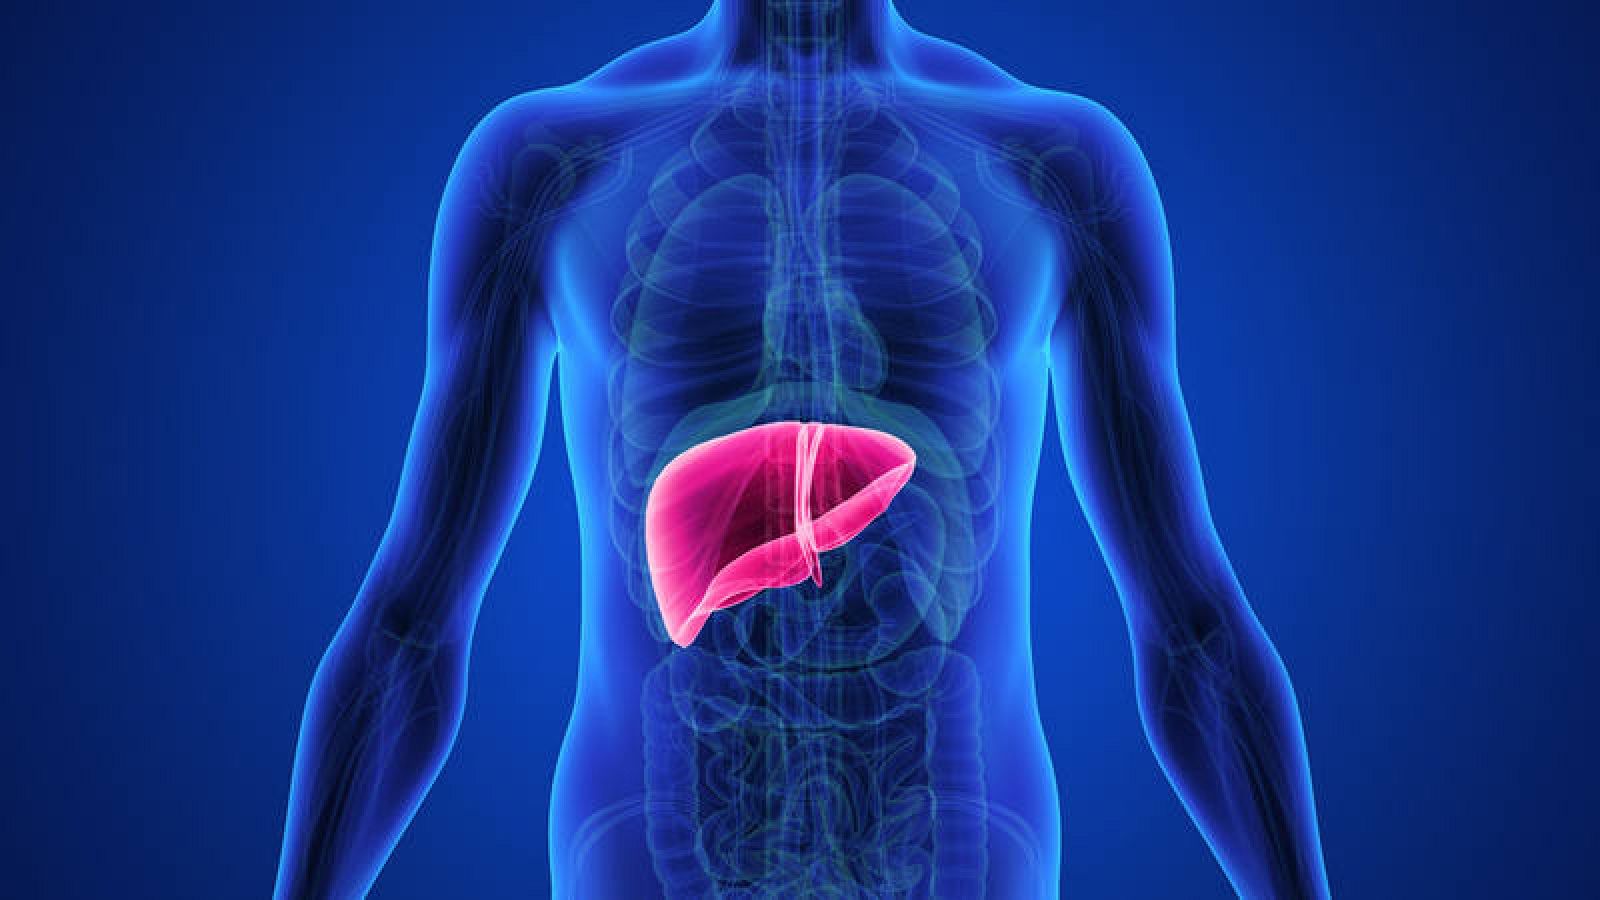 El carcinoma hepatocelular representa entre el 70-85 % de los tumores hepáticos malignos.